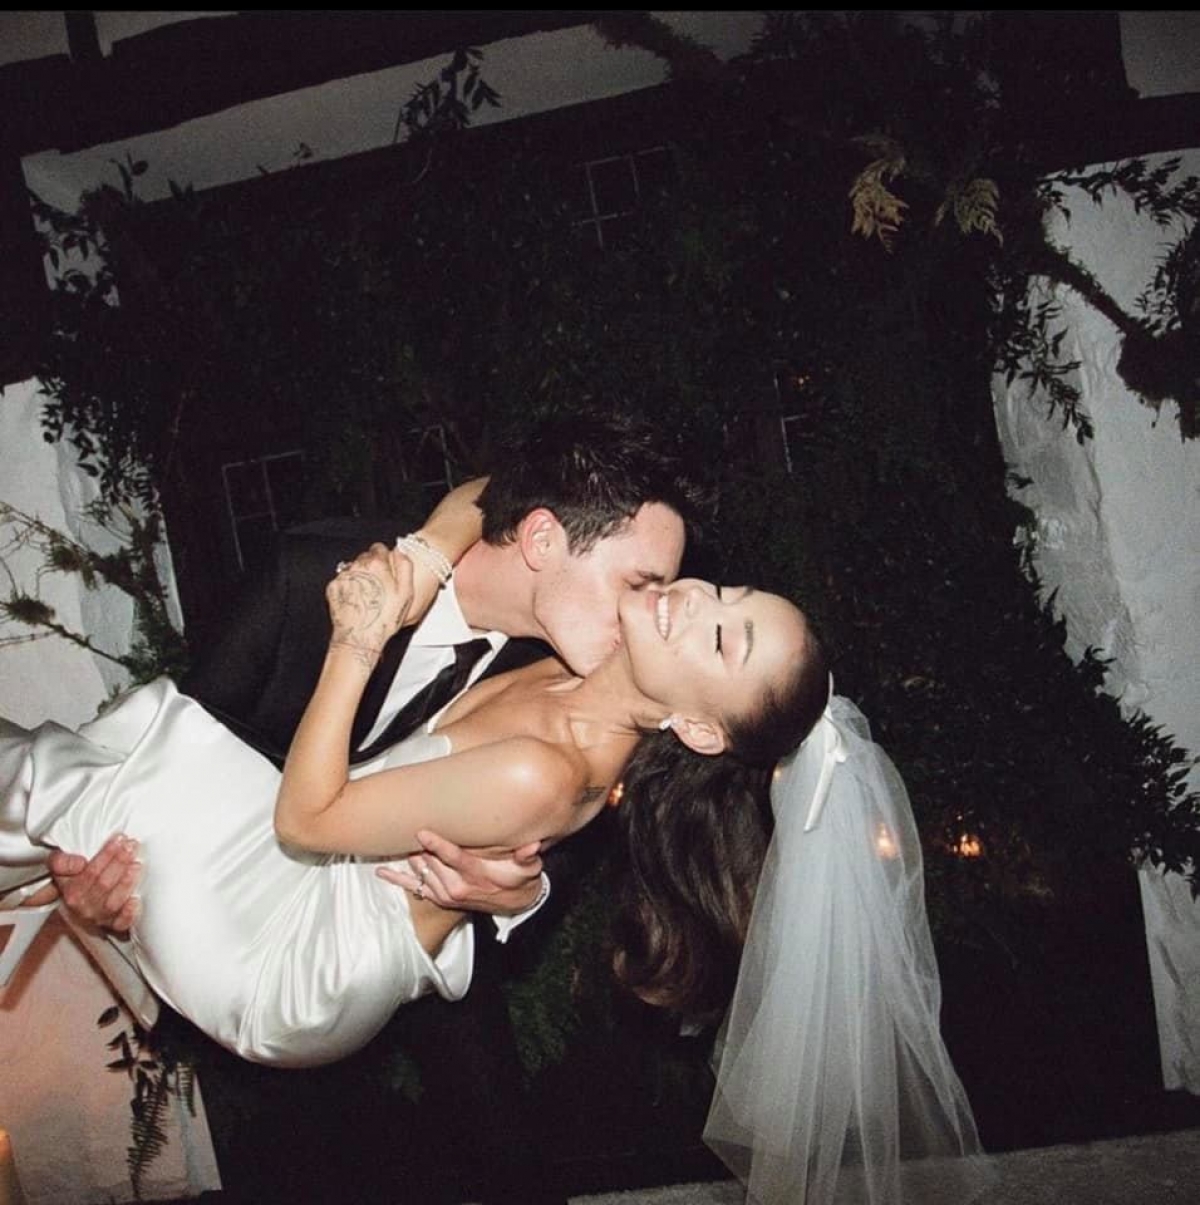 Năm 2021, Ariana Grande cũng kết hôn với bạn trai doanh nhân Dalton Gomez